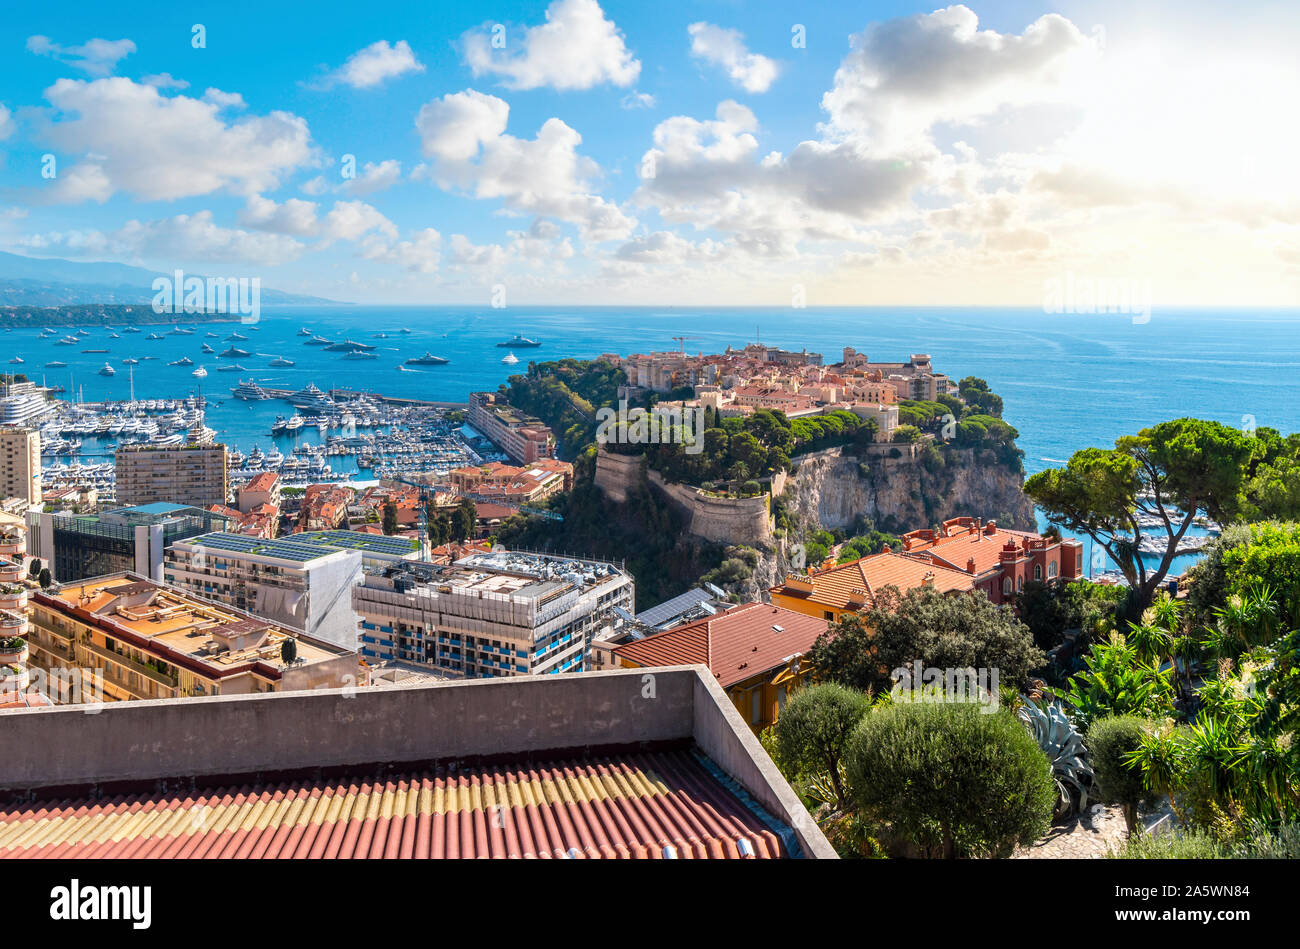 Blick auf das Mittelmeer und den Jachthafen, den Hafen, die Stadt und die Felsen des Monte Carlo, Monaco, wie die Sonne beginnt zu setzen. Stockfoto